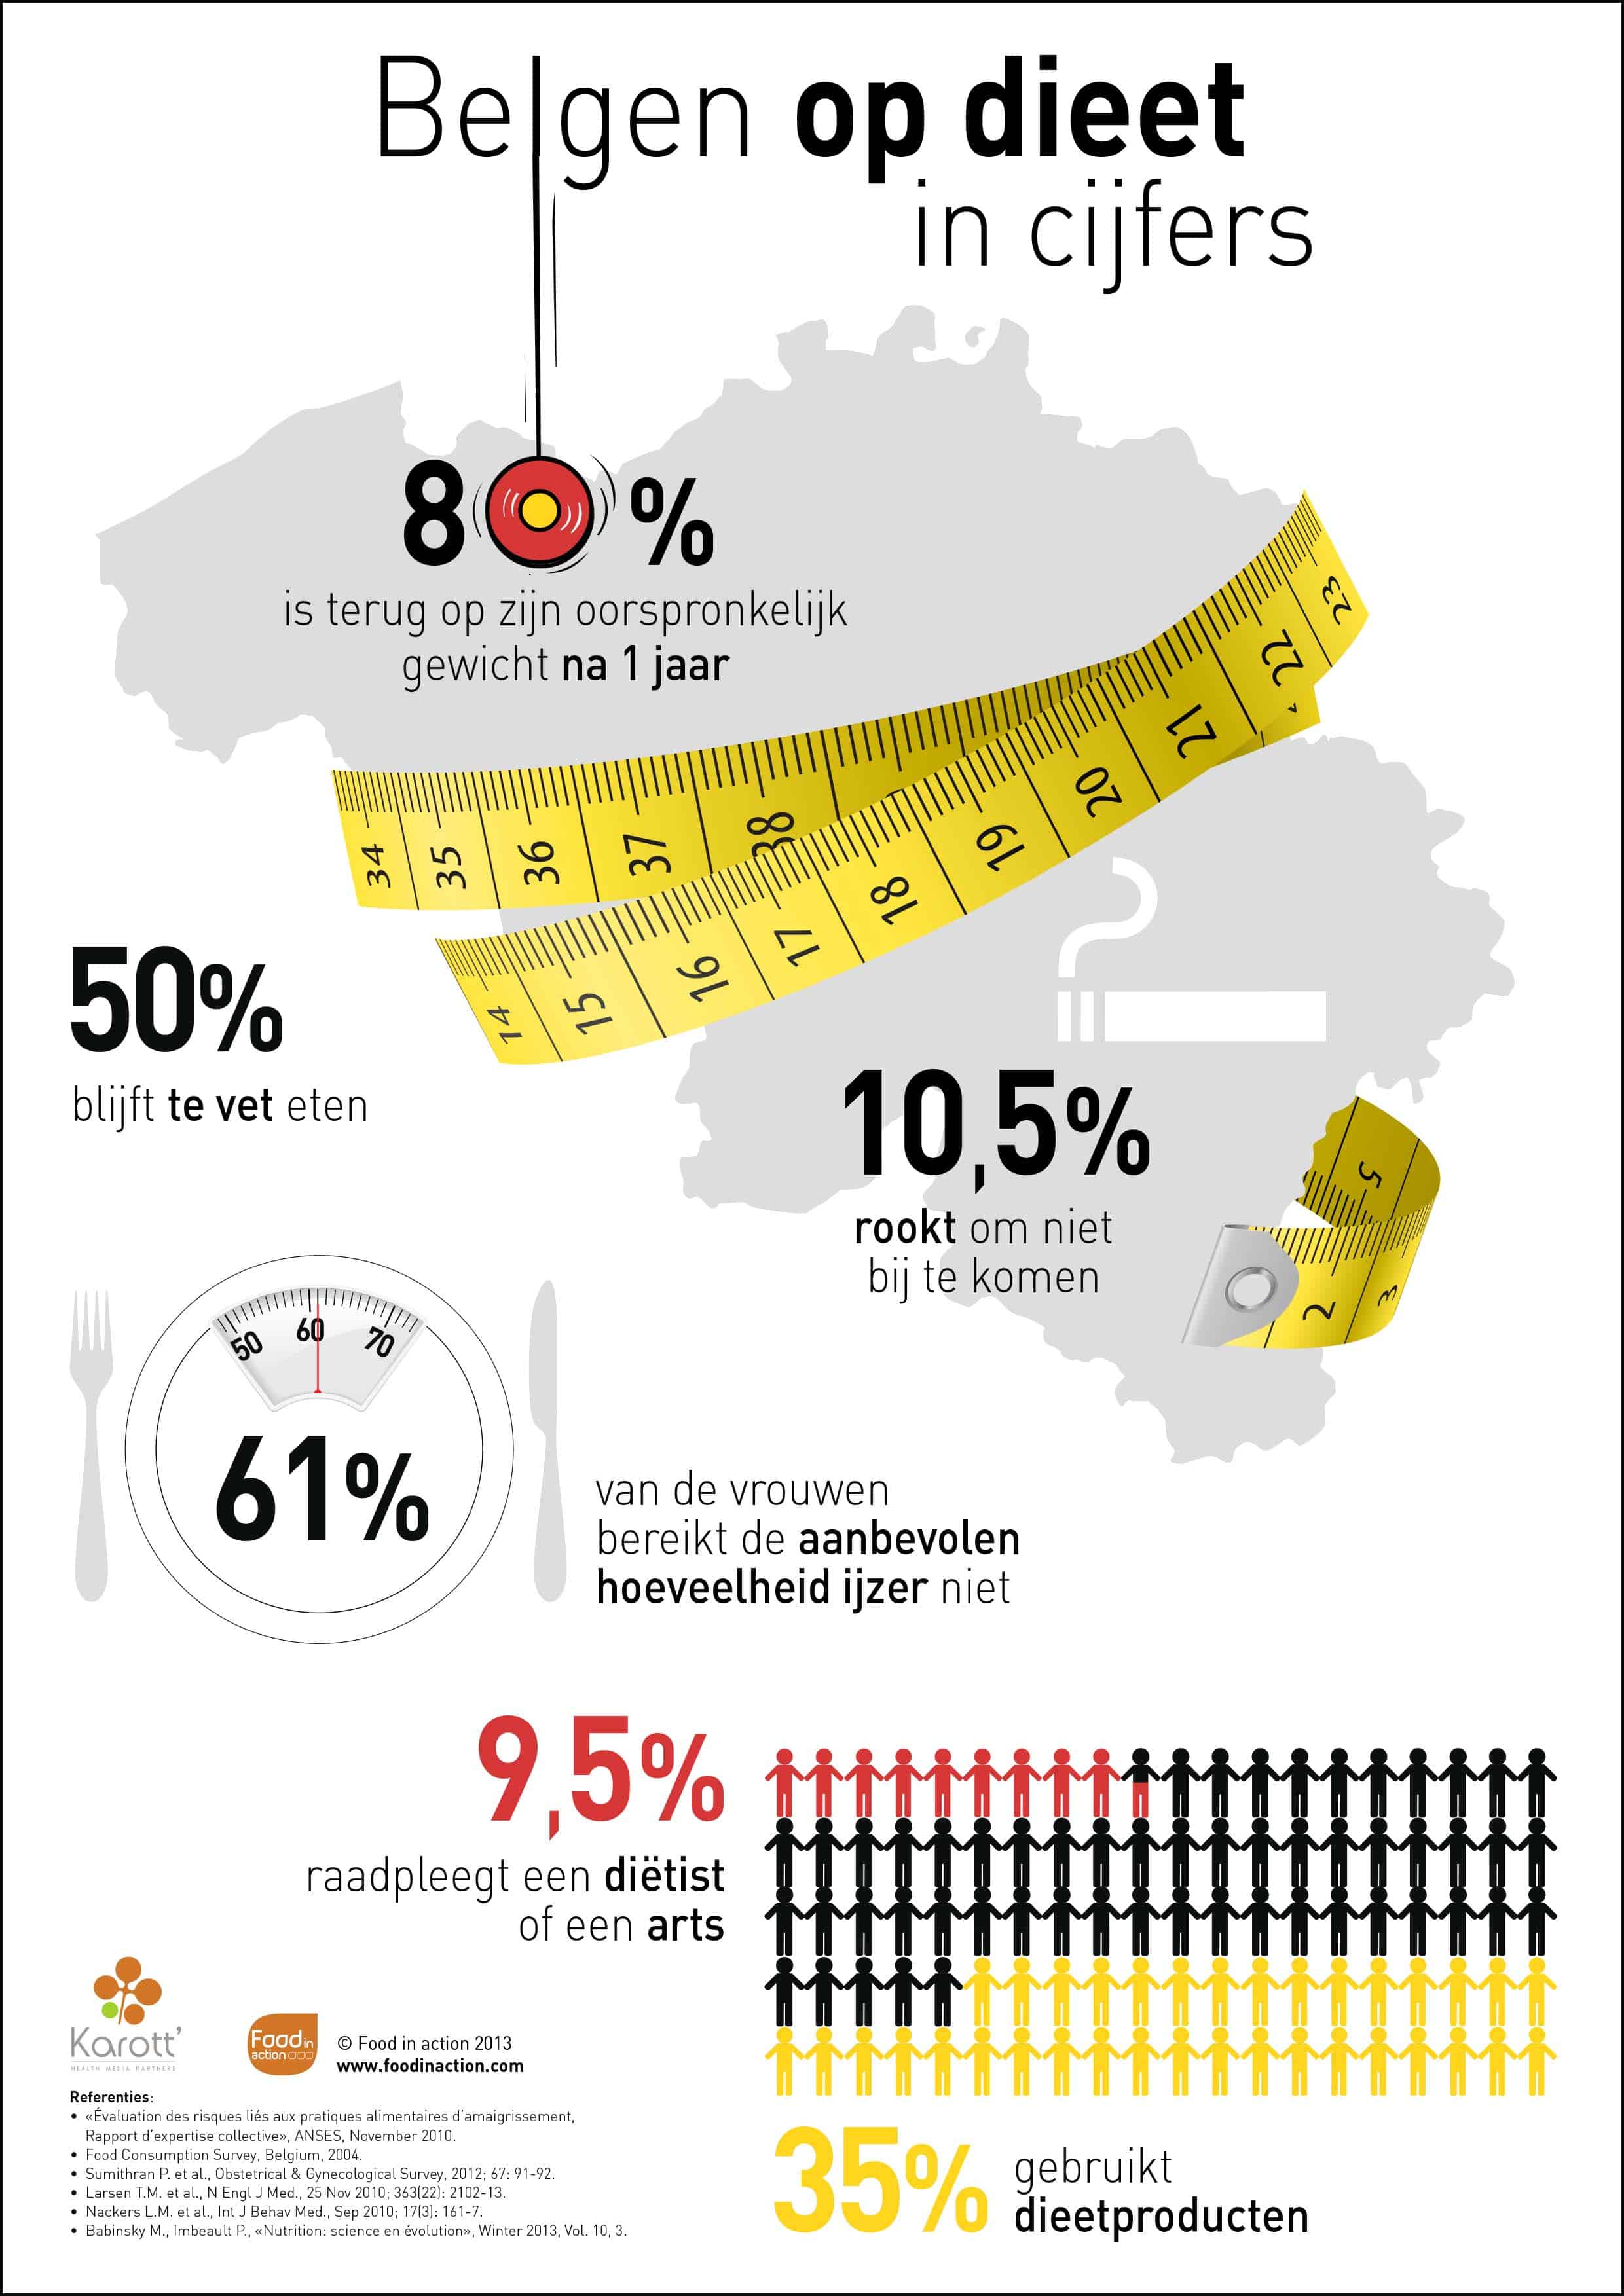 nutrigraphics-belgen-dieet-cijfers